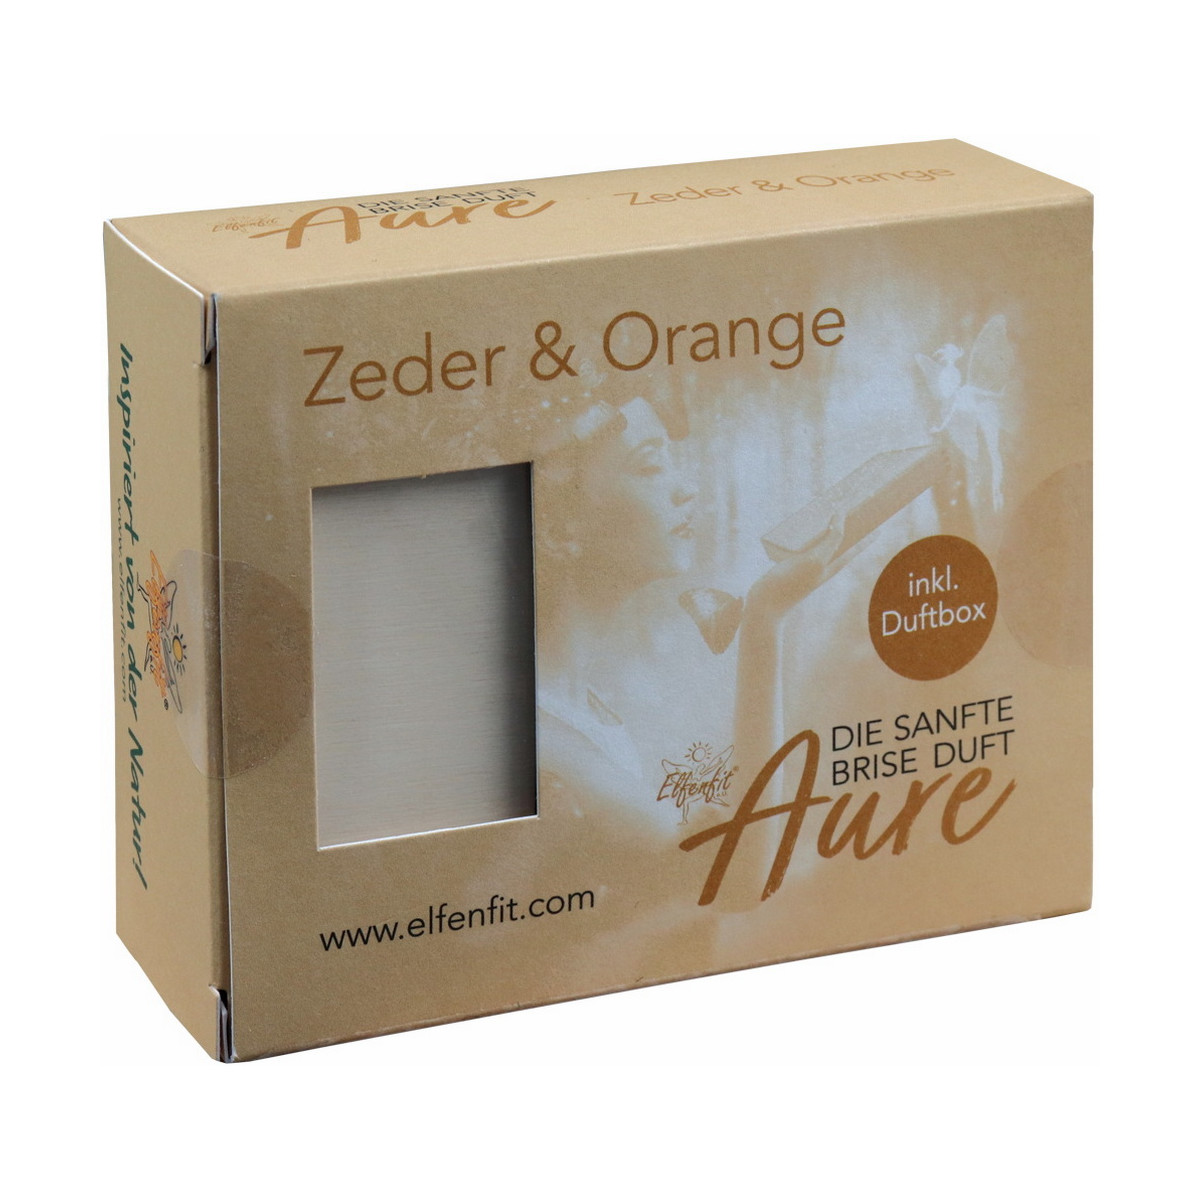 Elfenfit Aure Zeder & Orange mit Duftbox klein - Die...